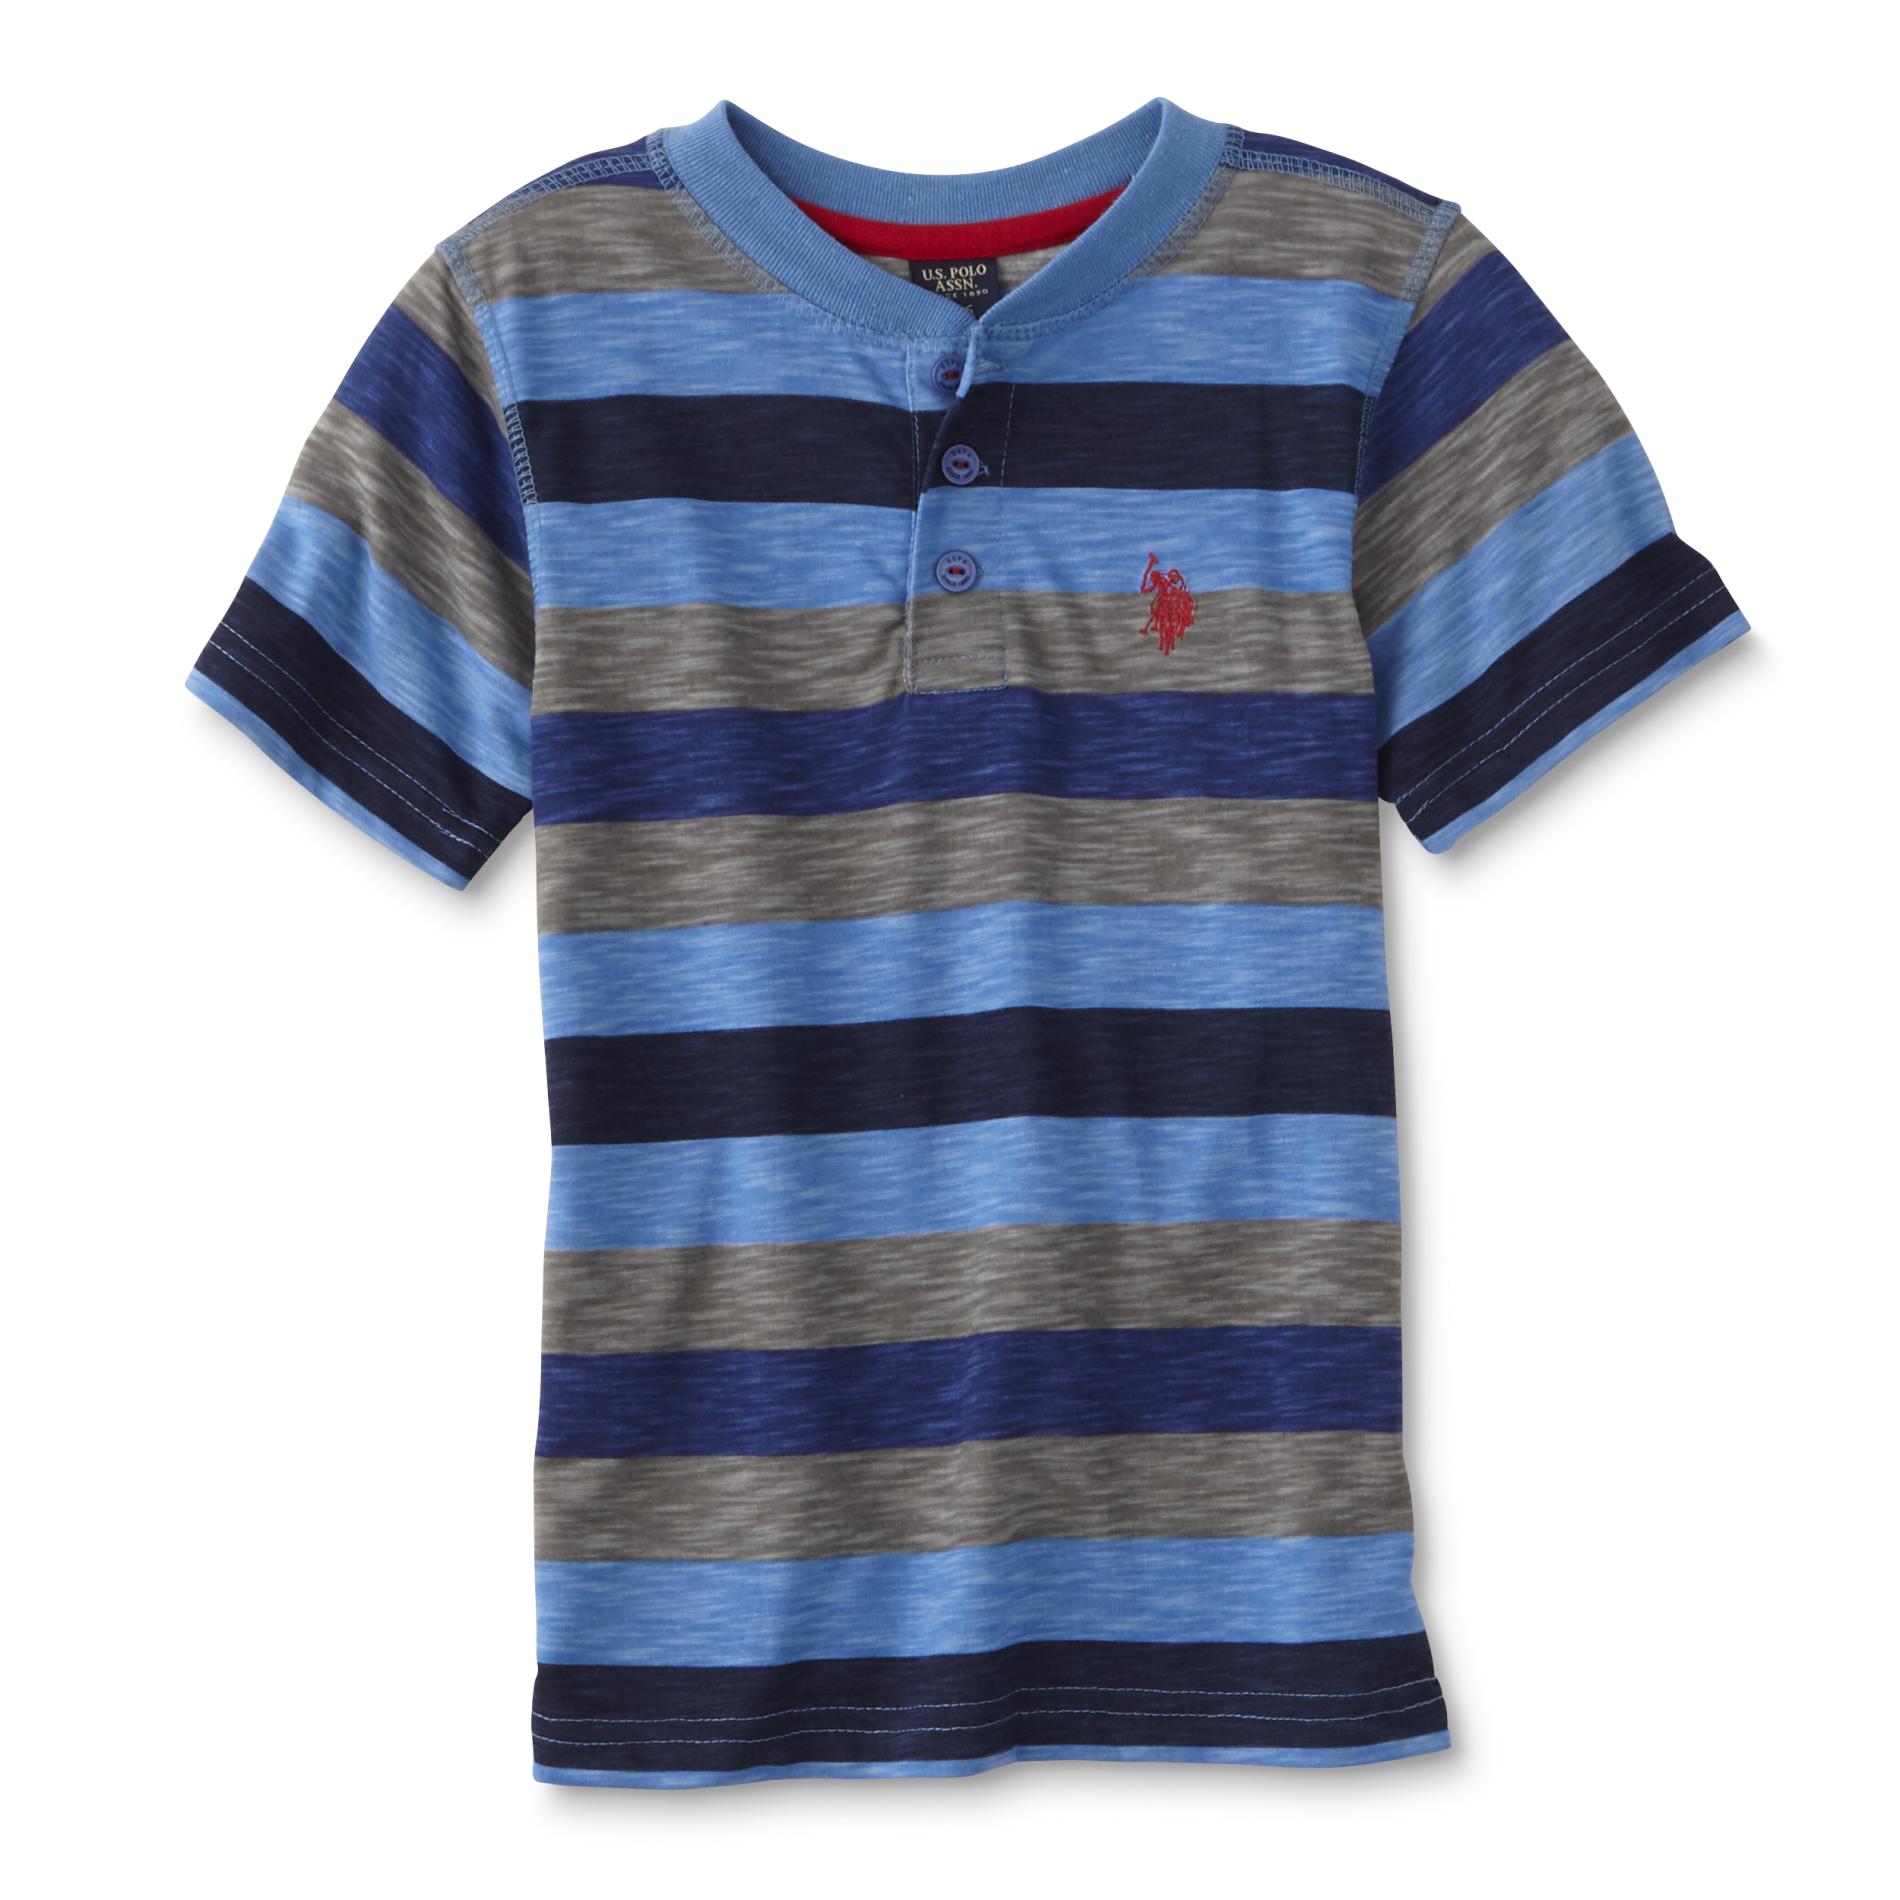 U.S. Polo Assn. Boys' Henley Shirt - Striped